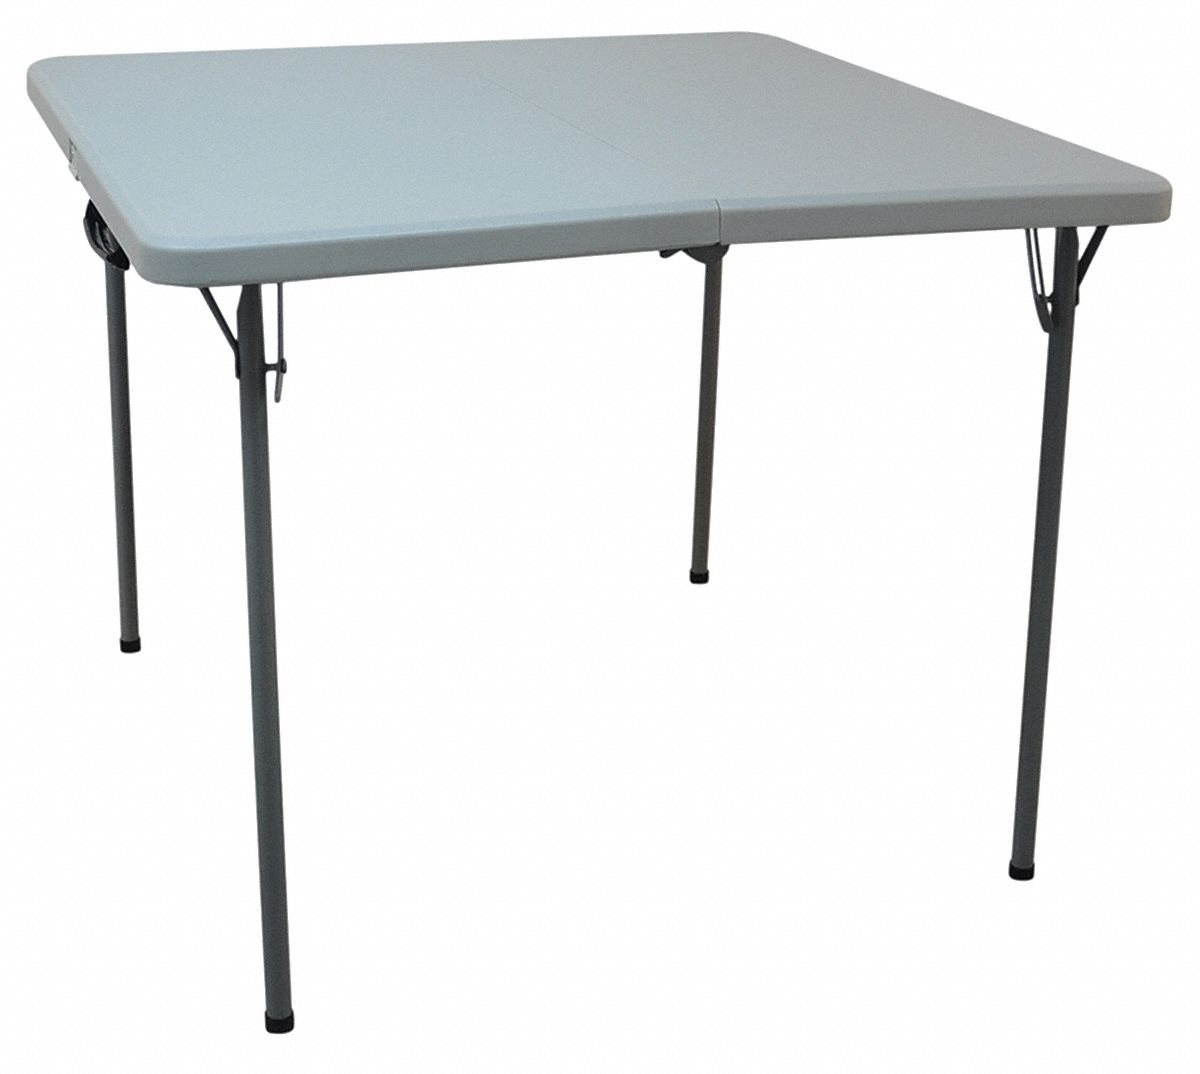 13V433 - Bifold Table 36 in.x36 in.x28 in. Gray